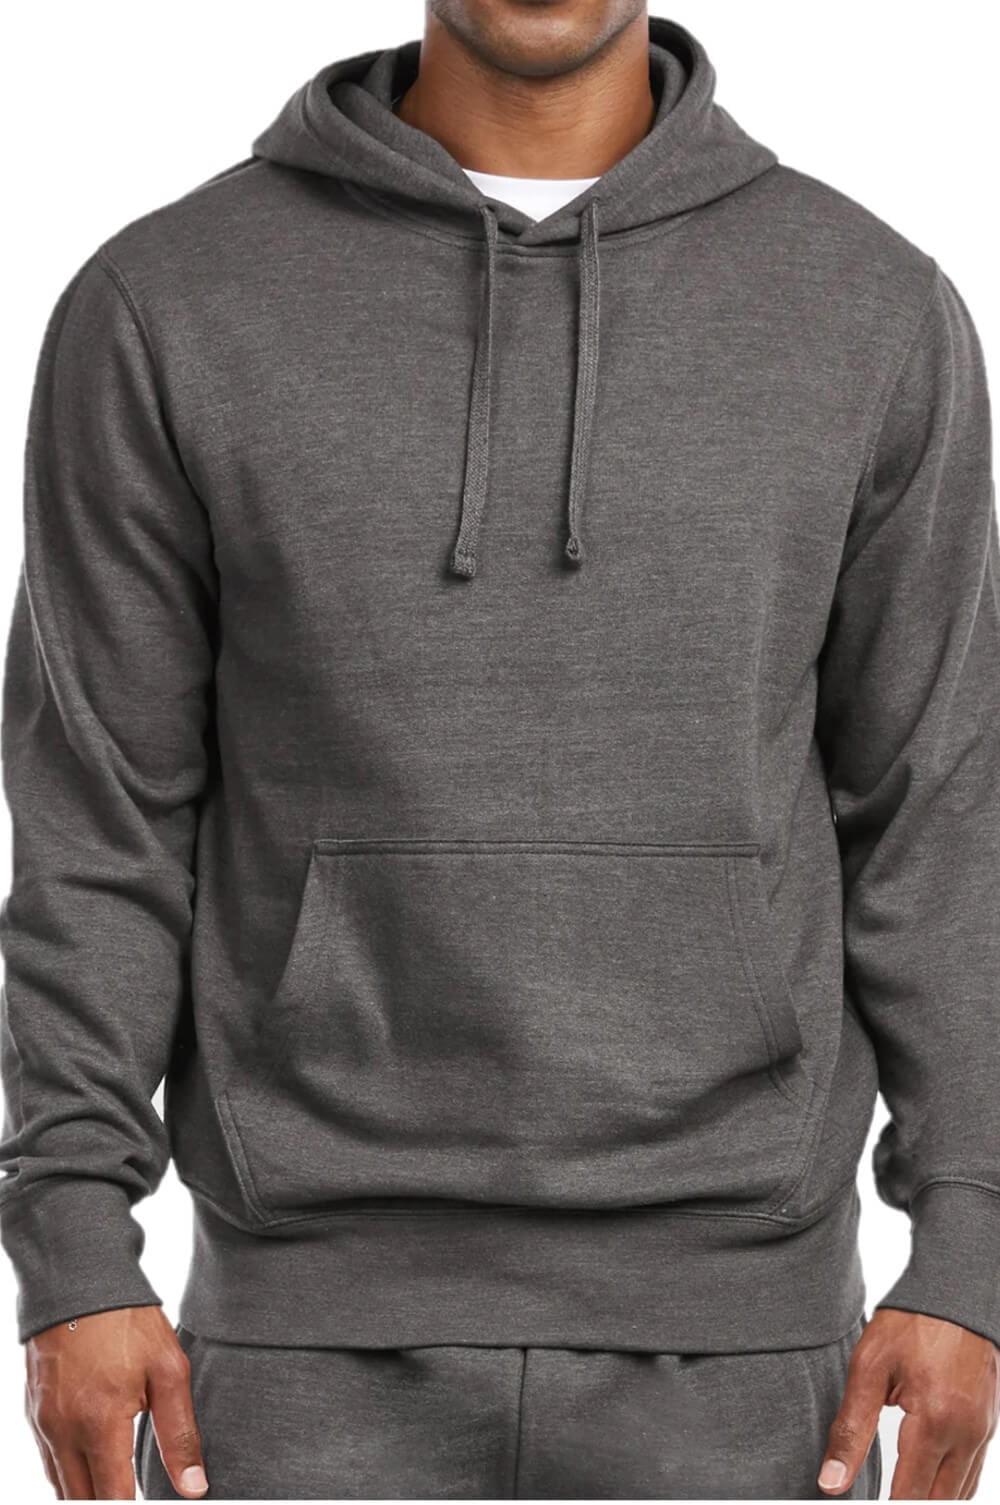 Men's Lightweight Fleece Pullover Hoodie / Sweatshirt, Charcoal